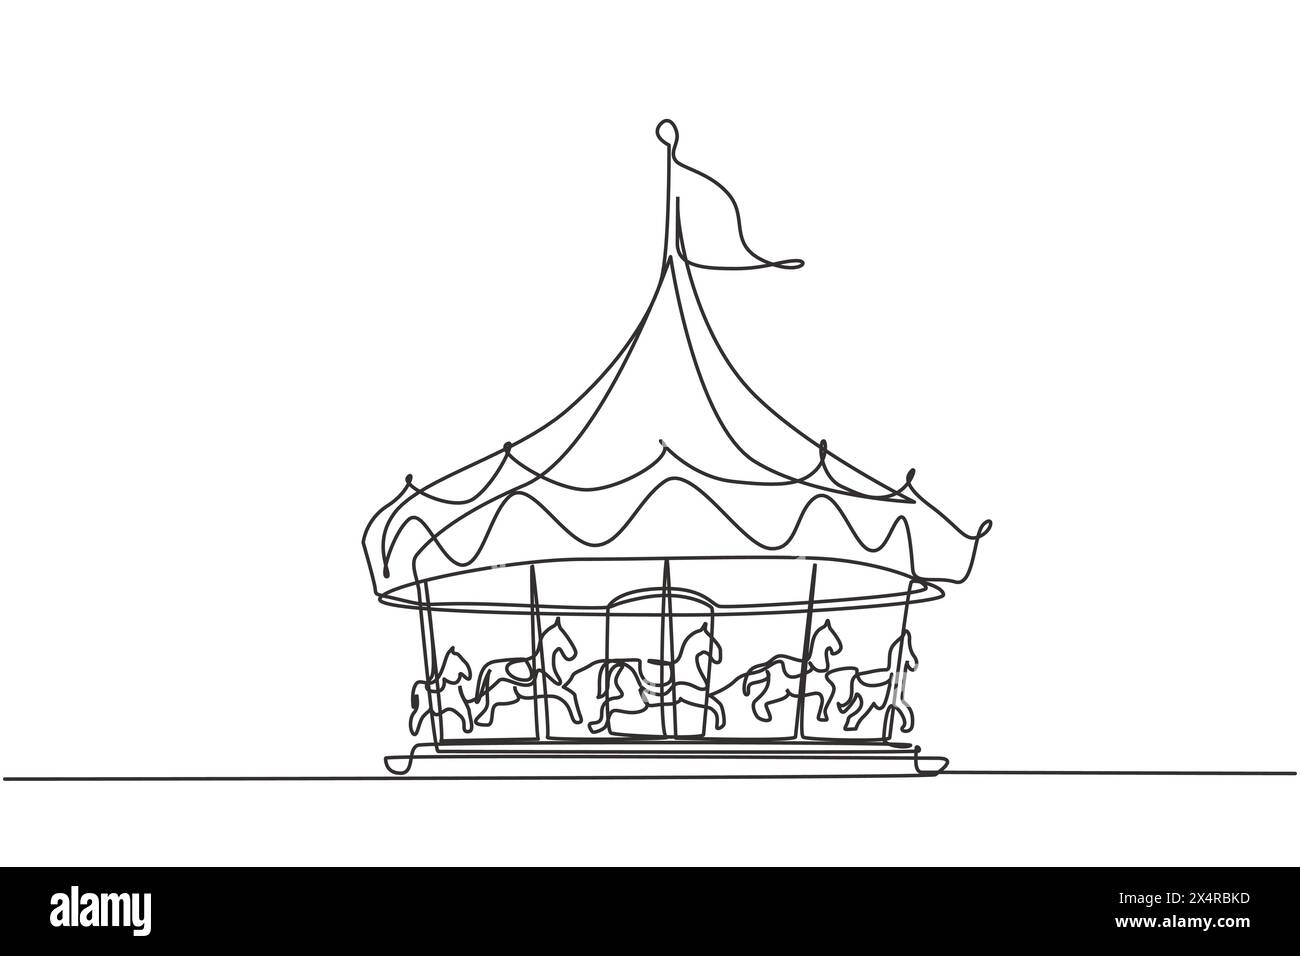 Carrousel de cheval de dessin continu d'une ligne dans un parc d'attractions tournant sous une grande tente avec un drapeau dessus. Des loisirs que les enfants adorent. L unique Illustration de Vecteur